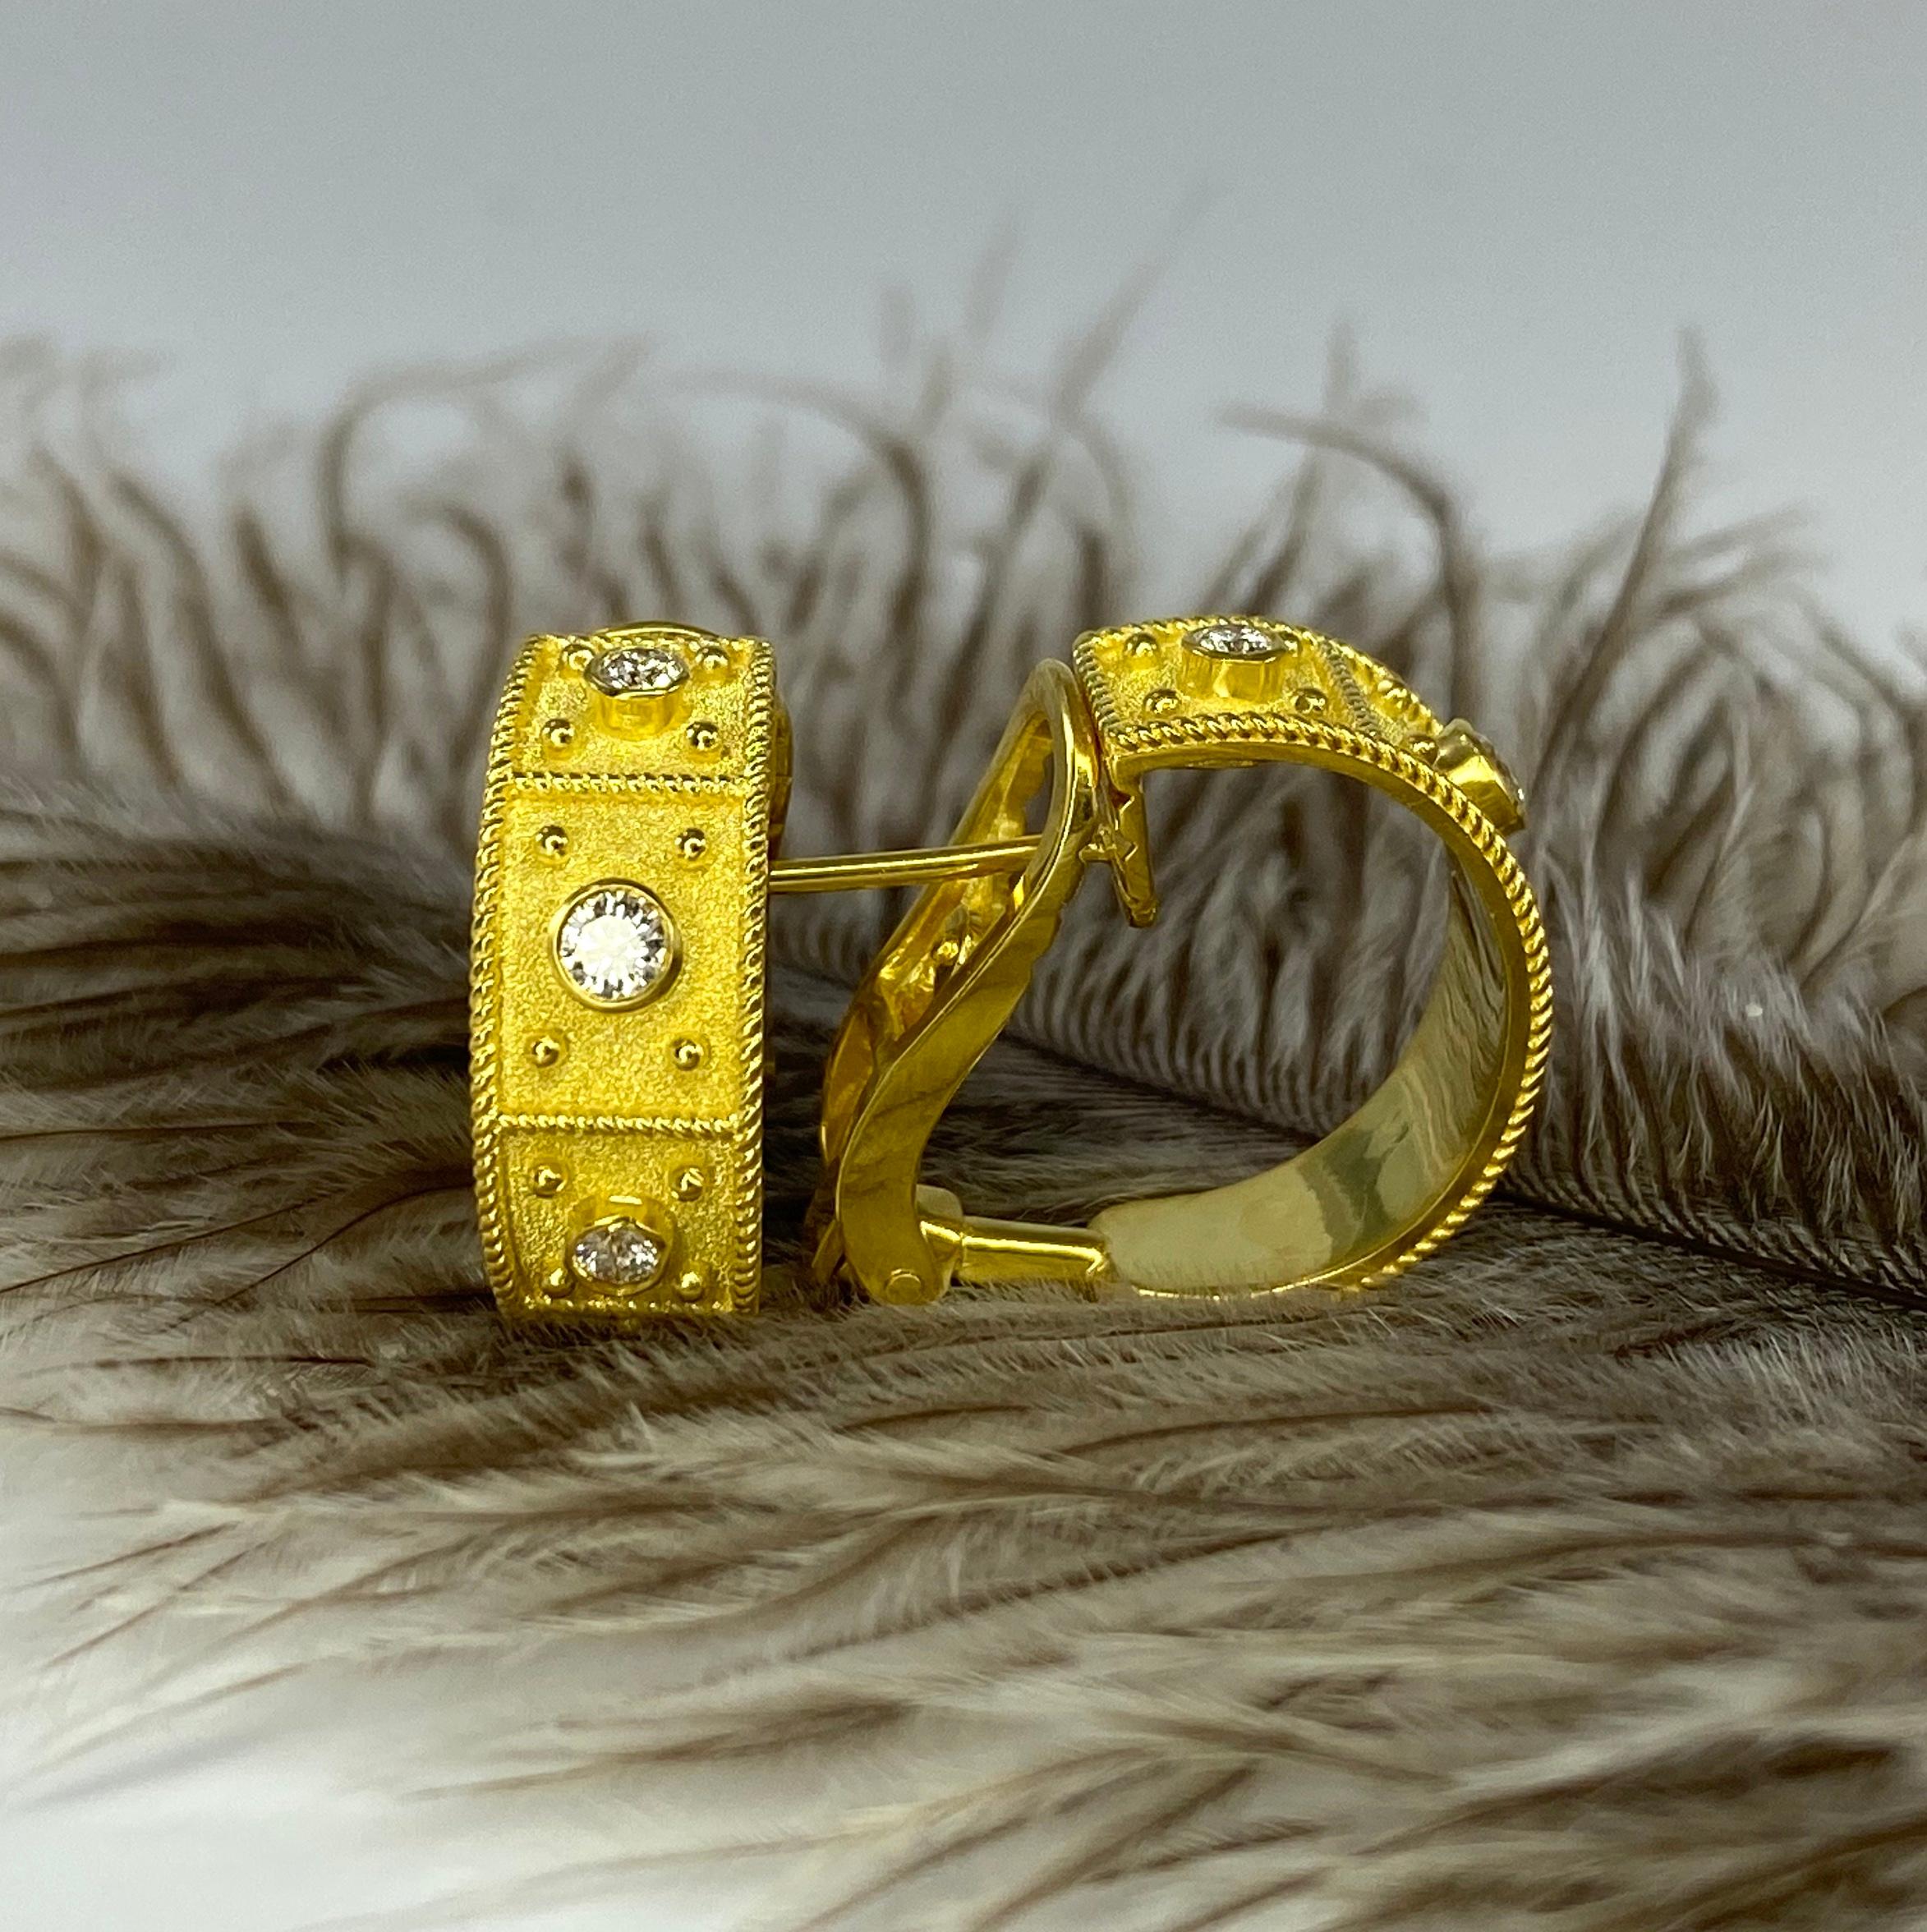 Les boucles d'oreilles S.Georgios sont fabriquées sur mesure en or jaune 18 carats et décorées dans le style Brilliante avec un travail de granulation et un fond de velours, et mettent en valeur des diamants blancs de taille brillant de 0,48 carat.